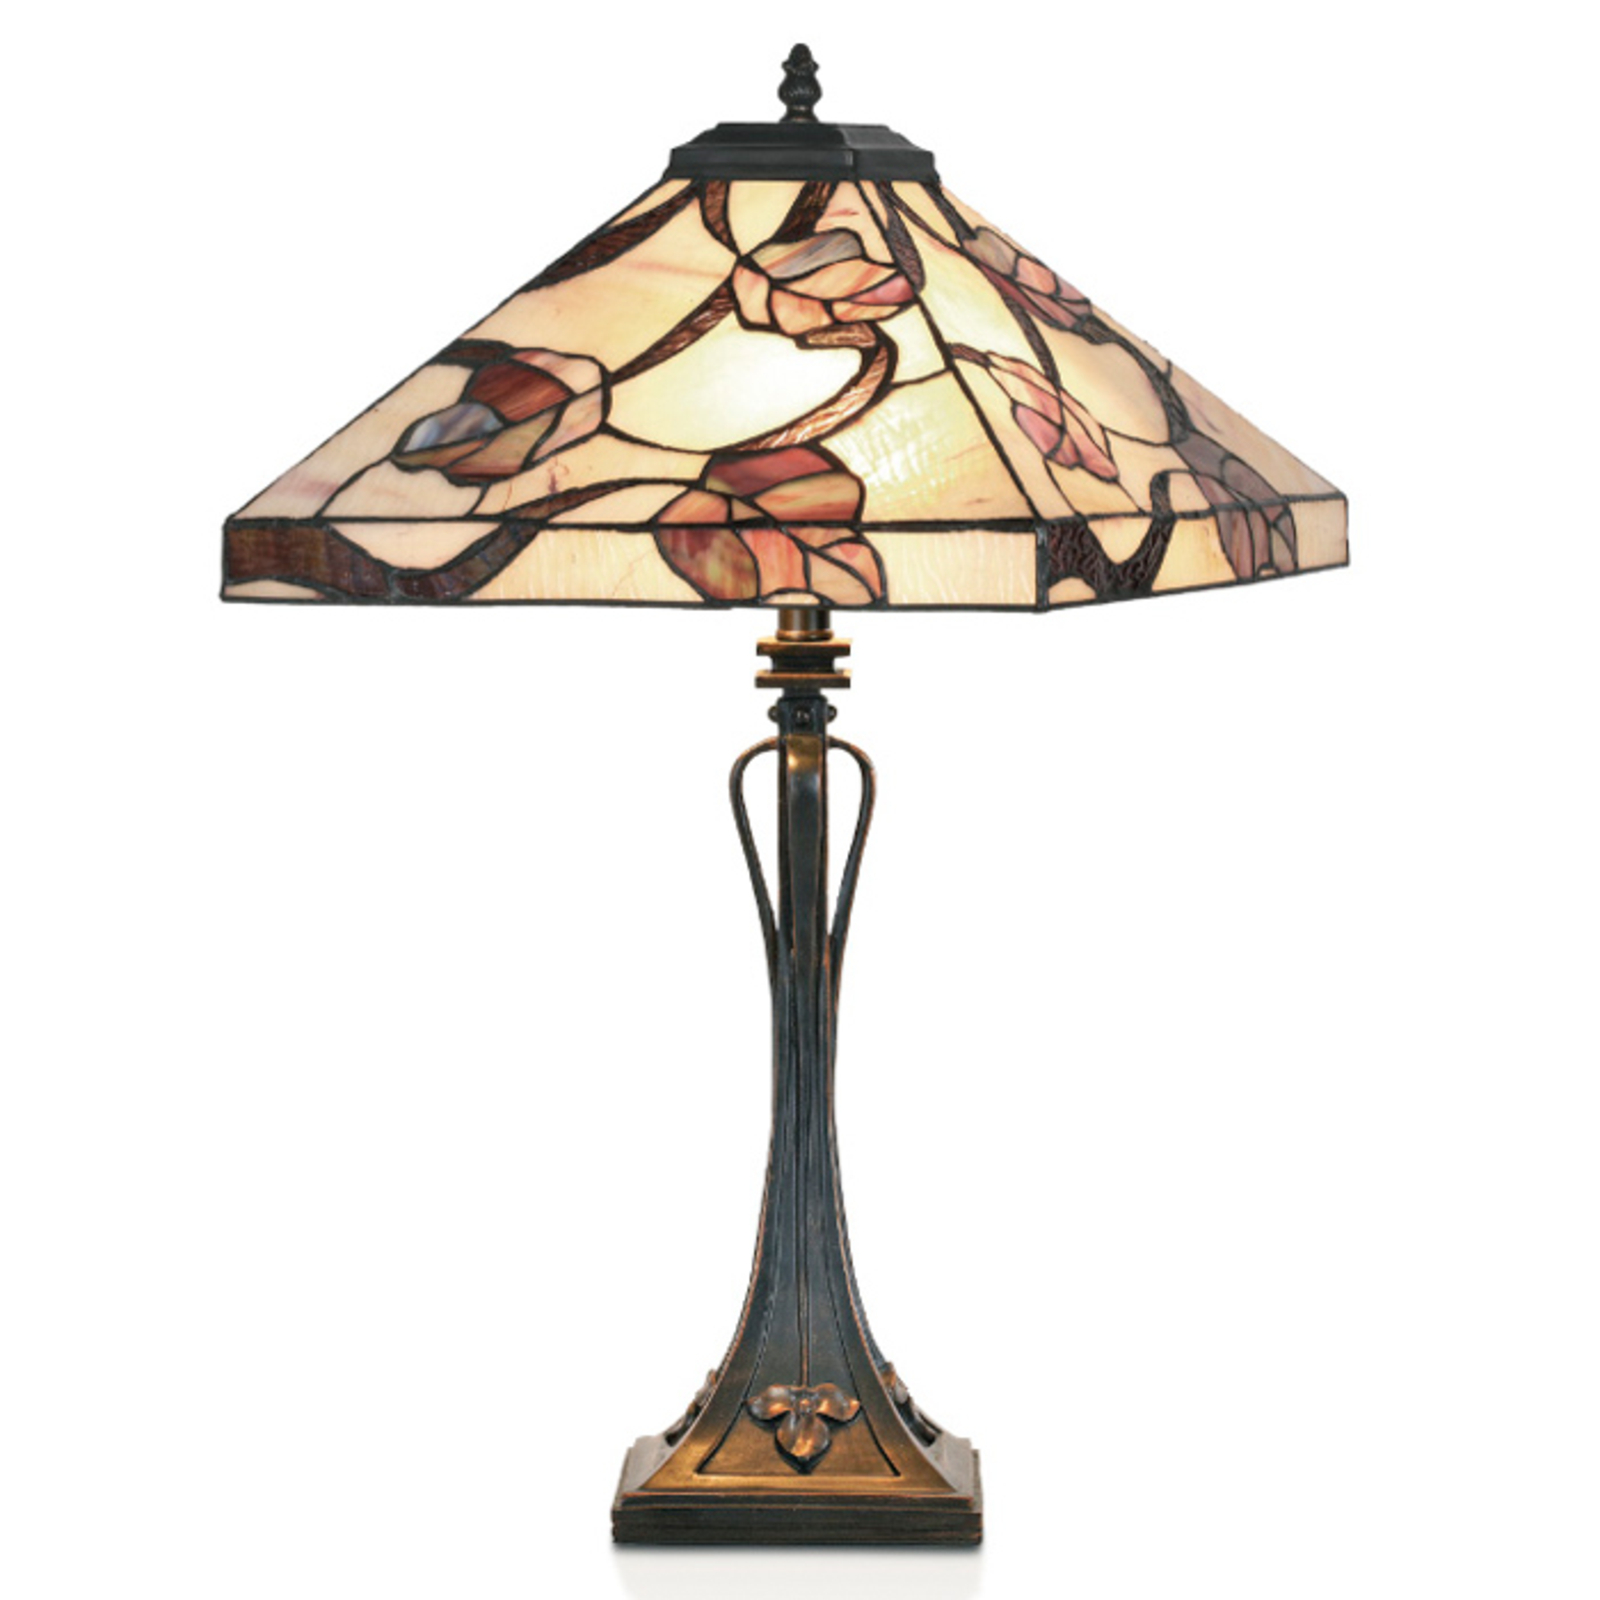 Lampa stołowa APPOLONIA w stylu Tiffany